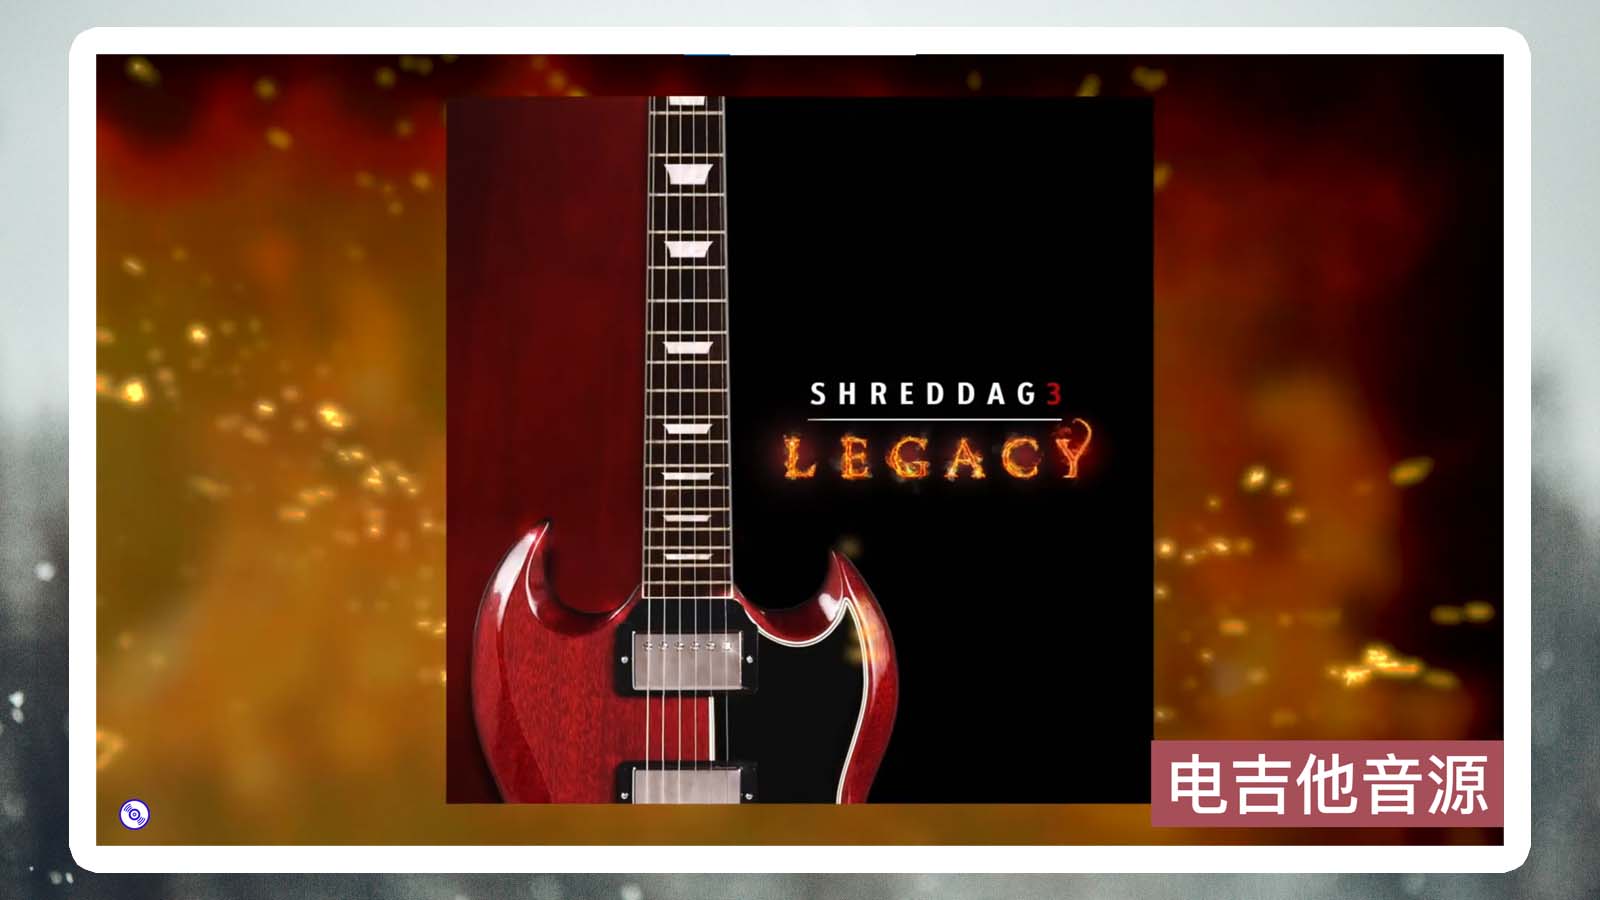 【电吉他音源Shreddage 3 Legacy】电吉他音源